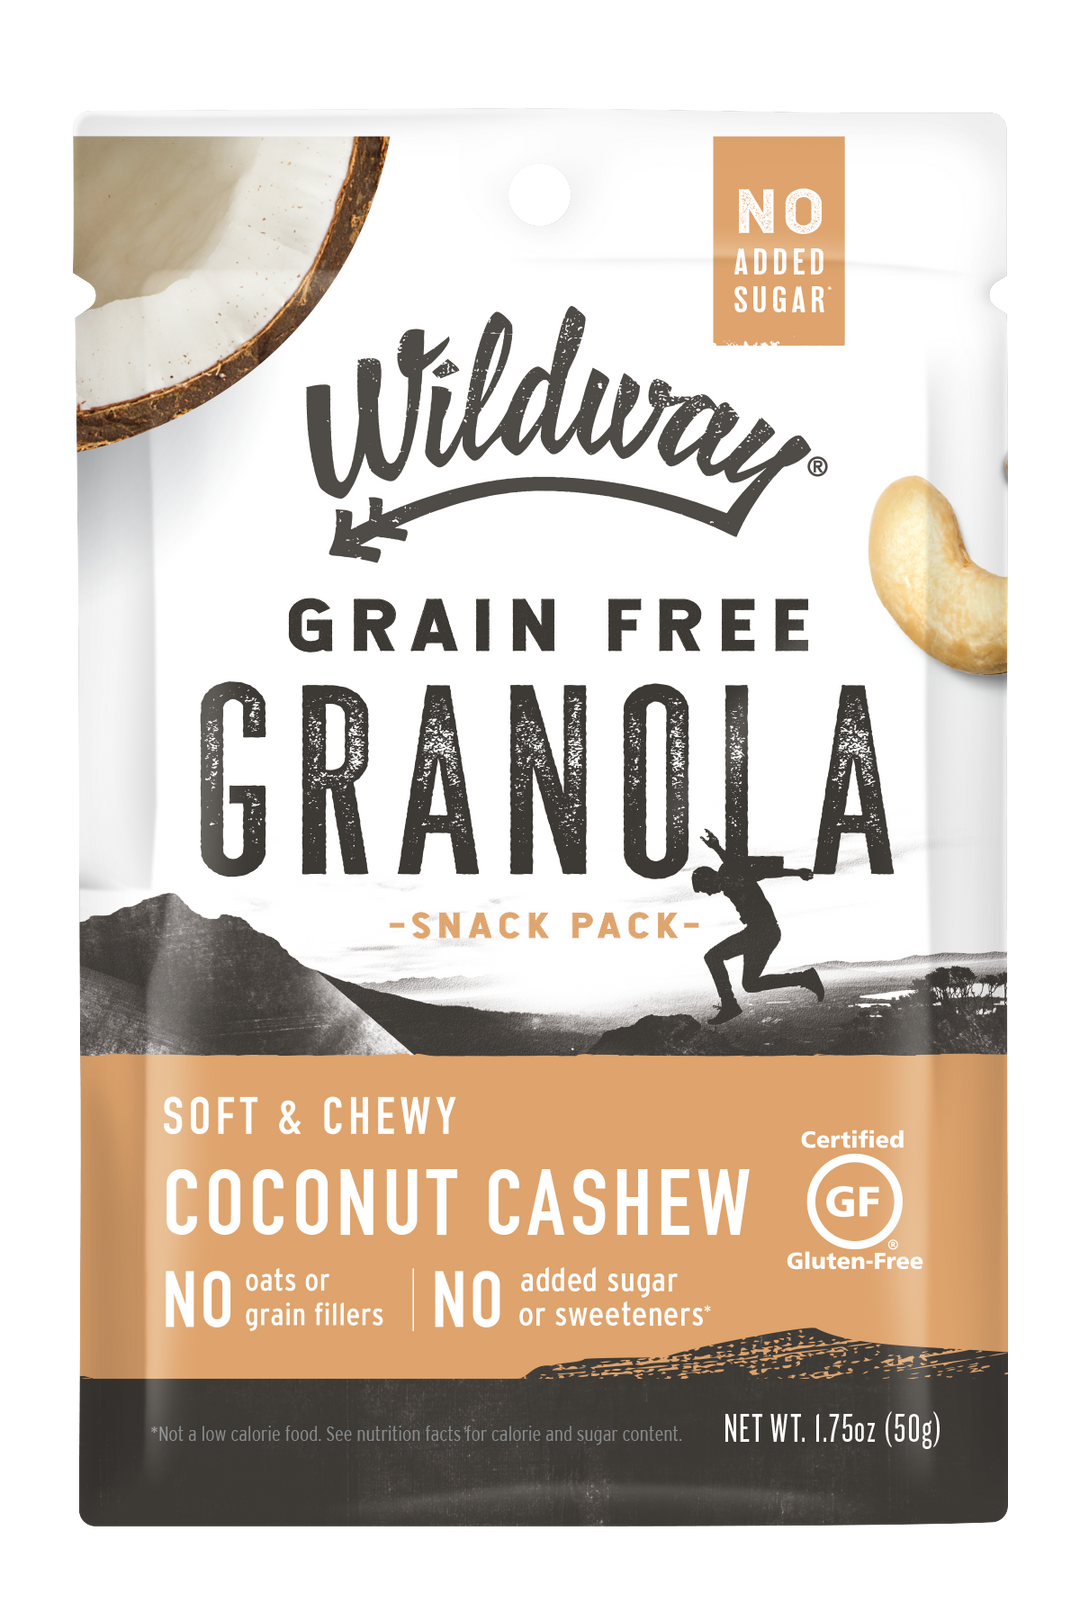 Grain free Granola Snack Pack - Coconut Cashew